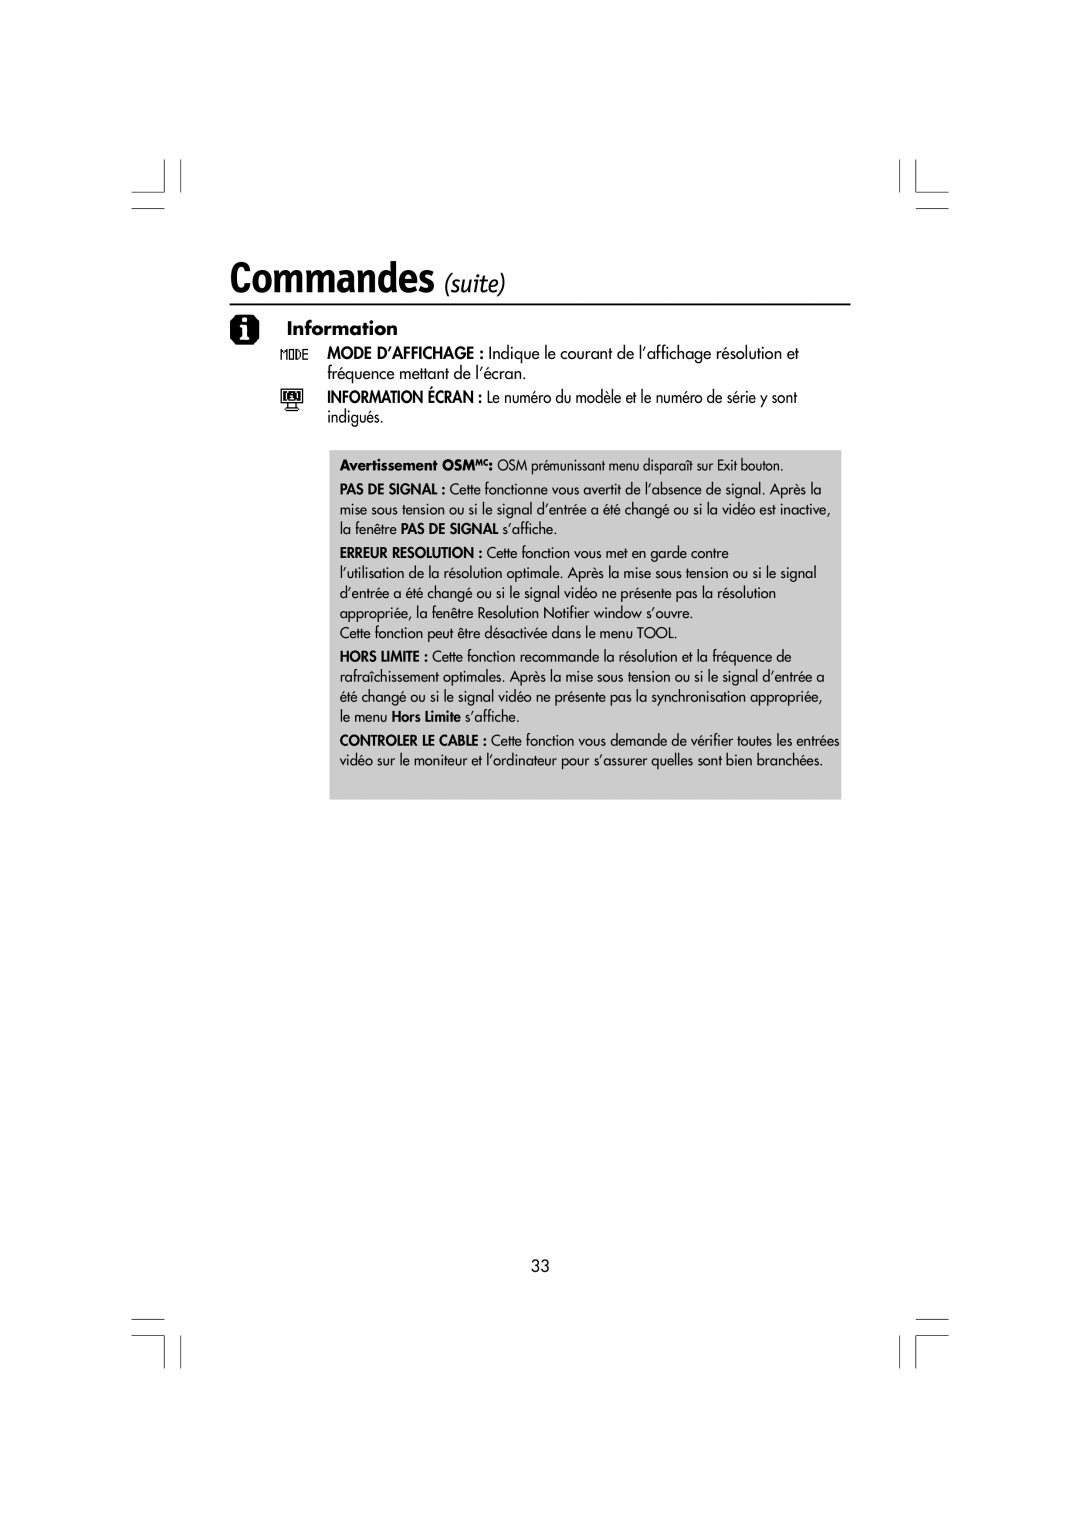 NEC LA-15R03-BK manual Commandes suite, Information, Avertissement OSMMC OSM prŽmunissant menu dispara”t sur Exit bouton 